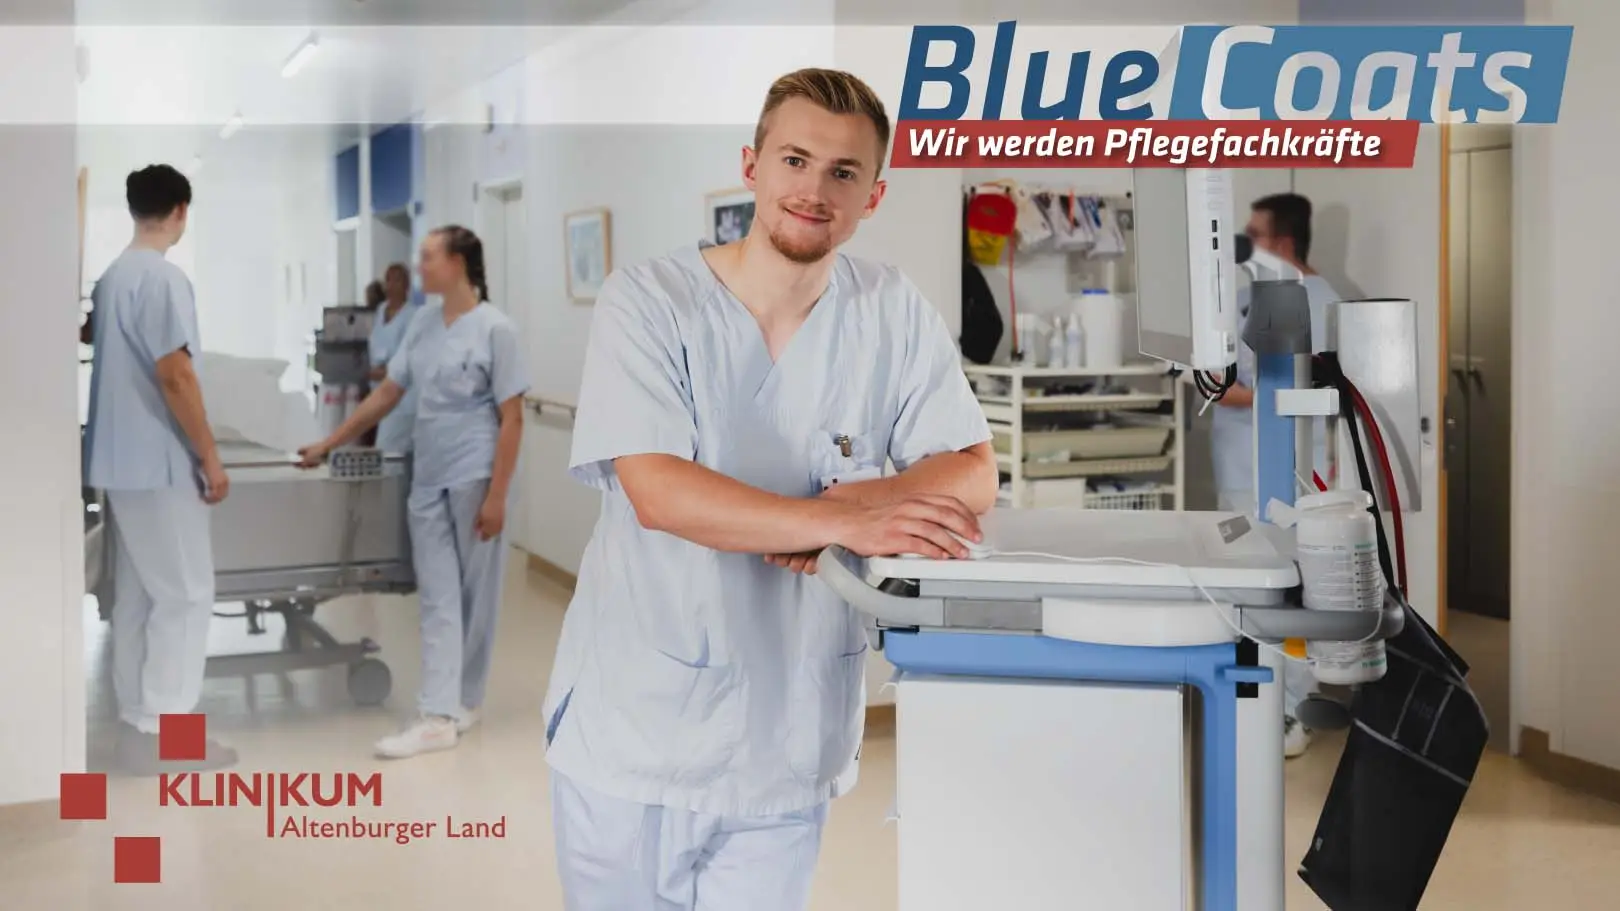 Serien-Pendant als Recruiting-Film: Azubi-Kampagne für das Klinikum Altenburger Land